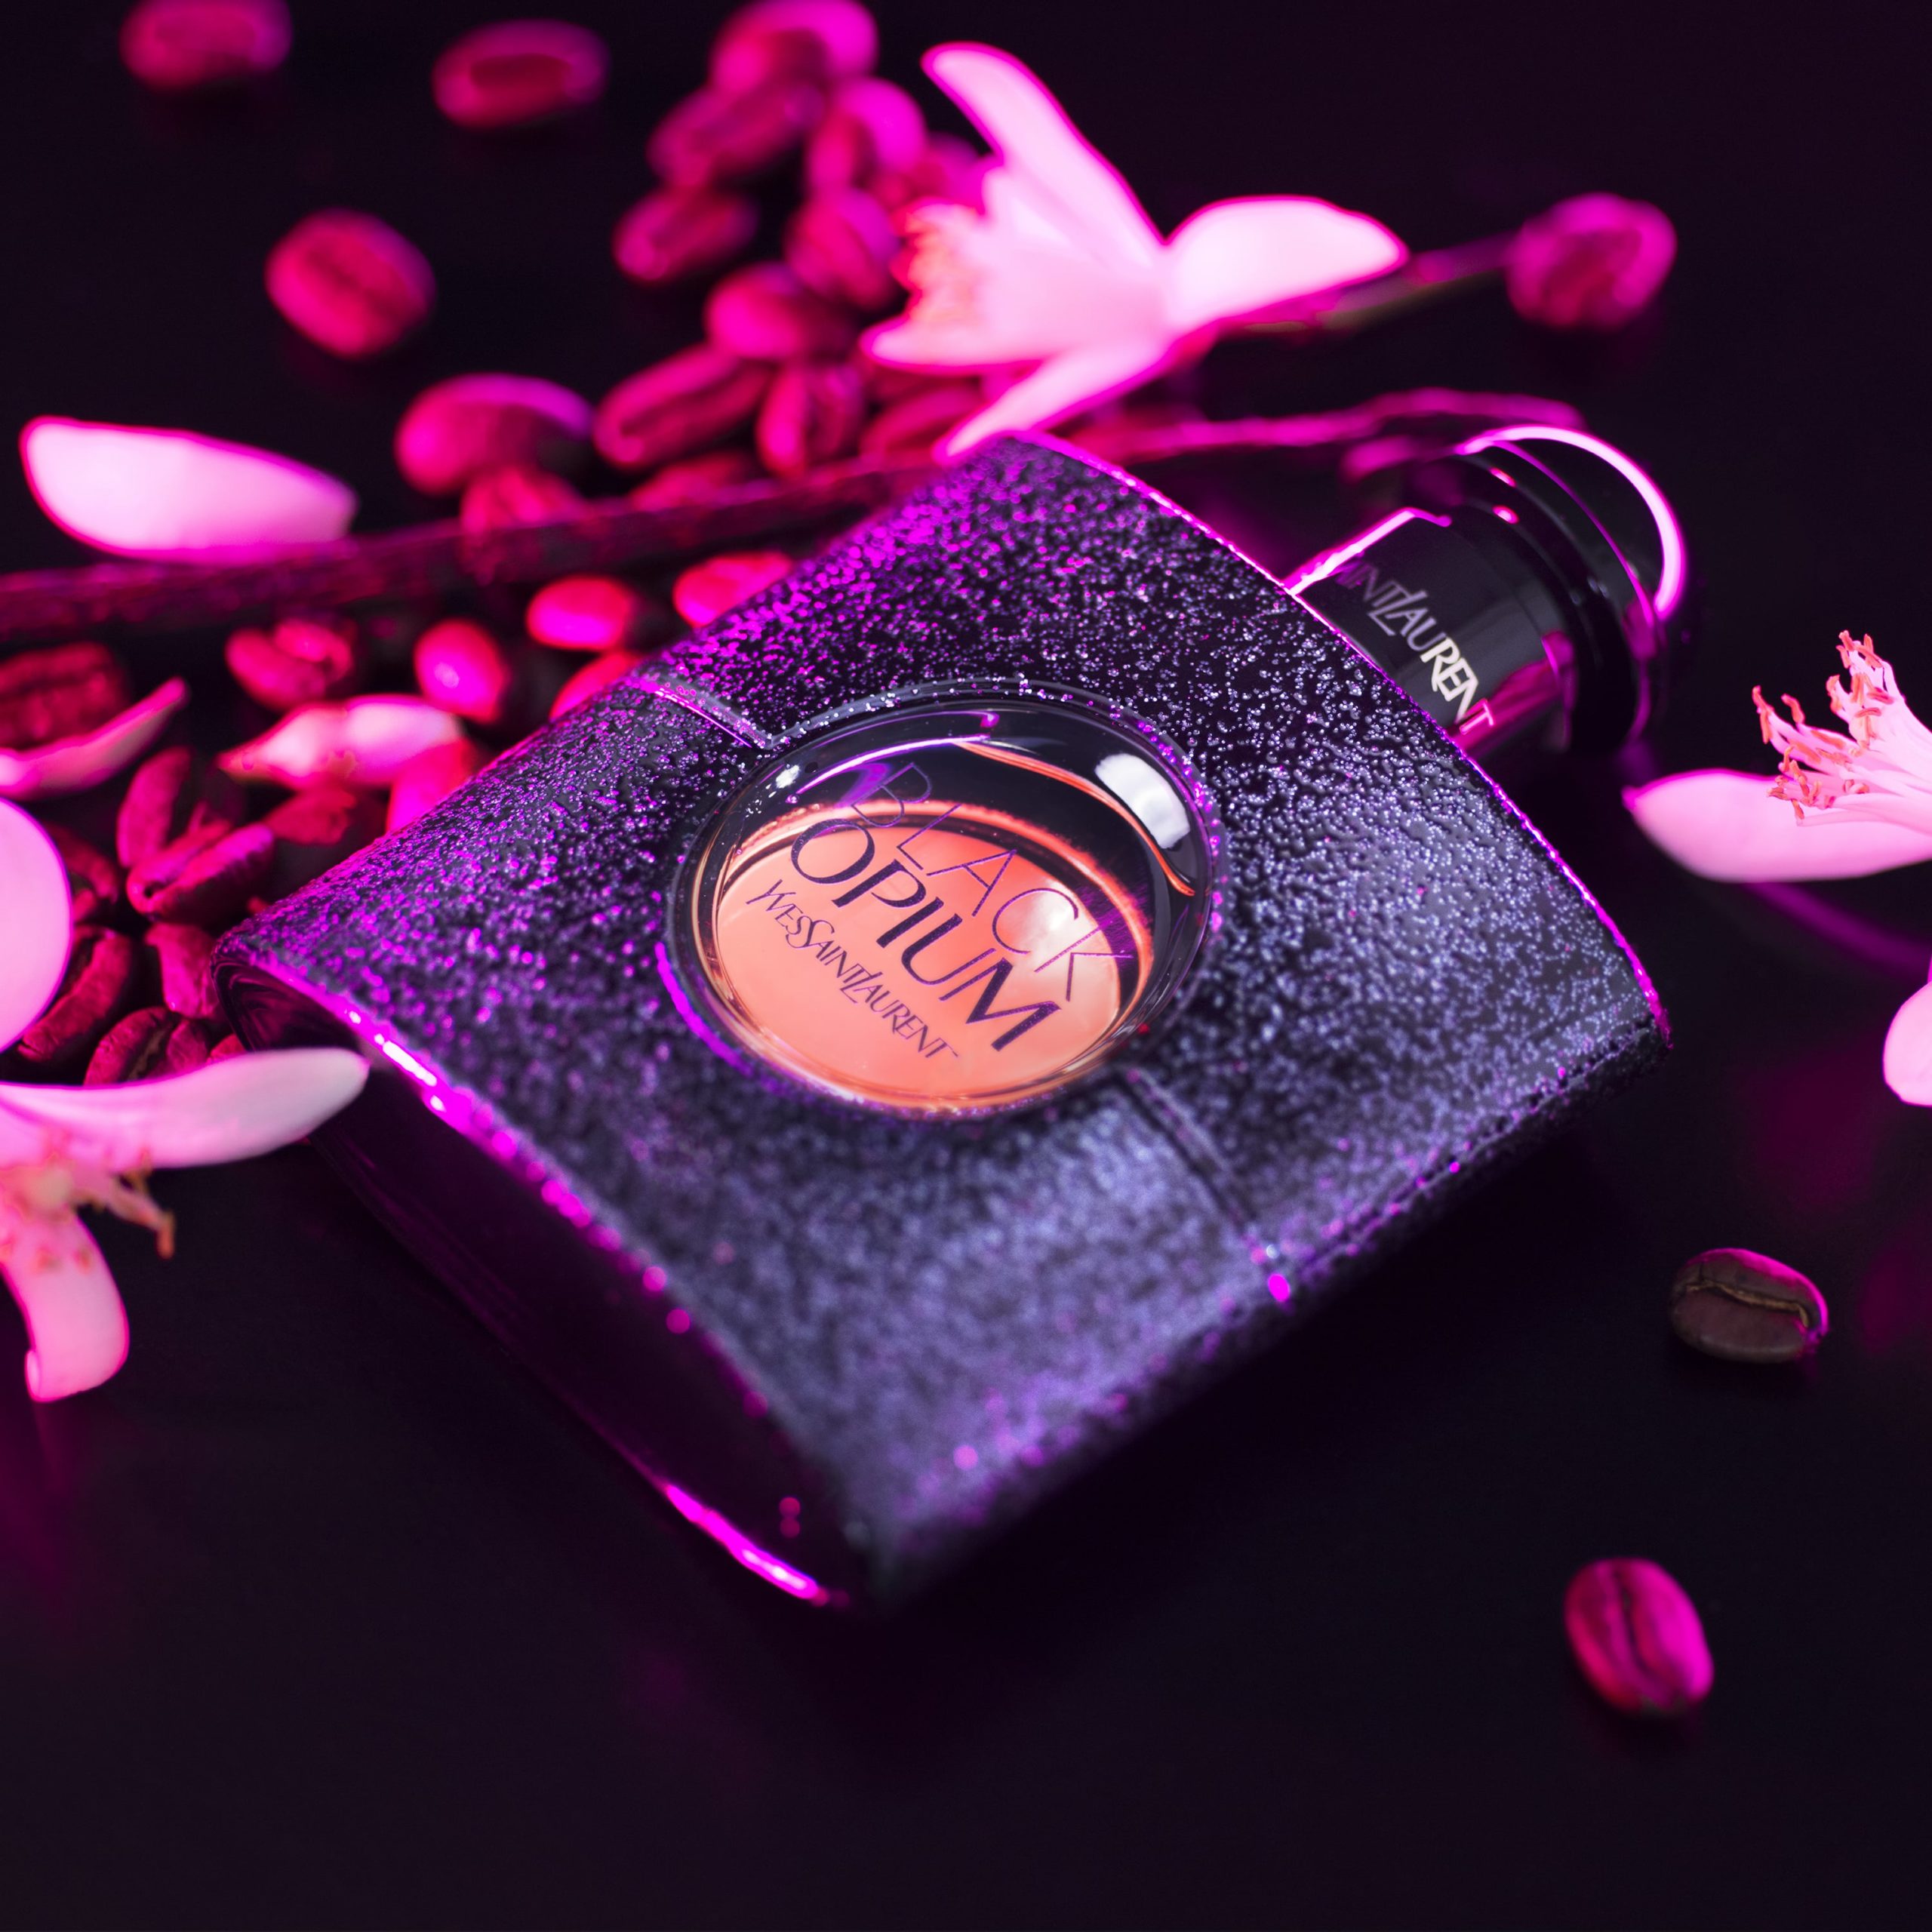 YSL Black Opium Eau de Parfum 50ml and Makeup Icons Gift Set